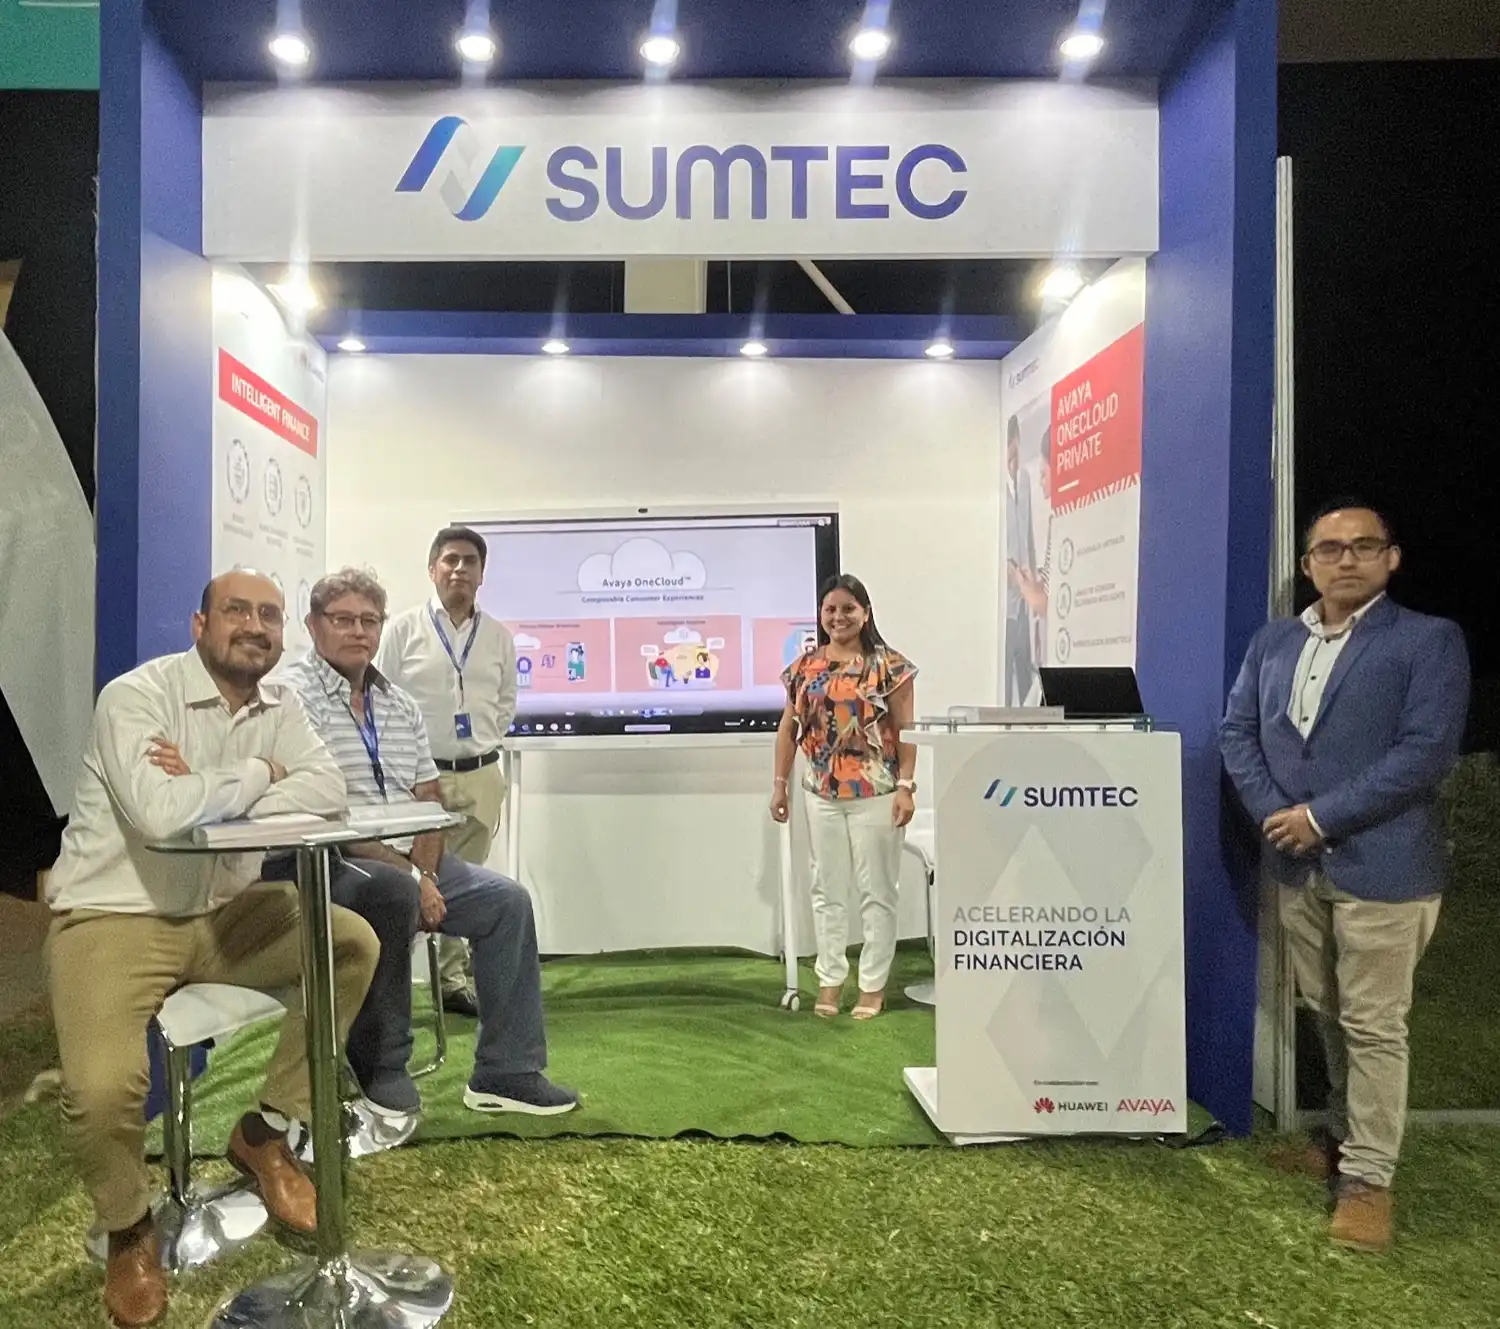 Soluciones de Sumtec modernizan la banca y microfinanzas